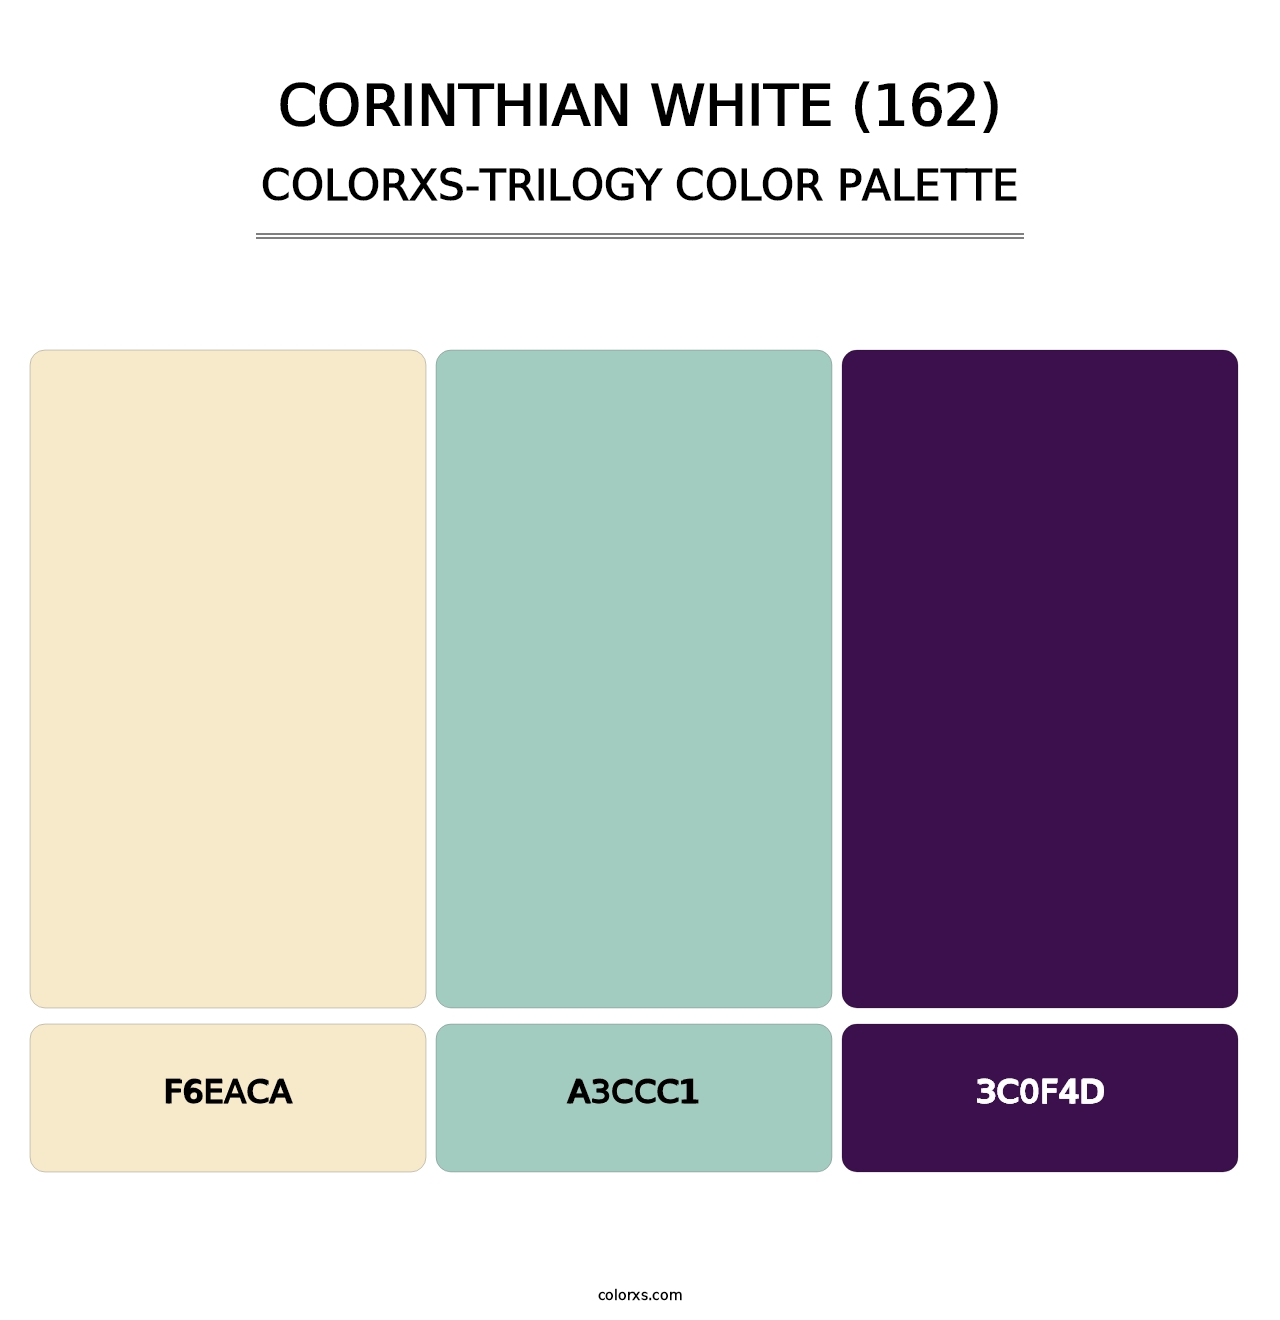 Corinthian White (162) - Colorxs Trilogy Palette